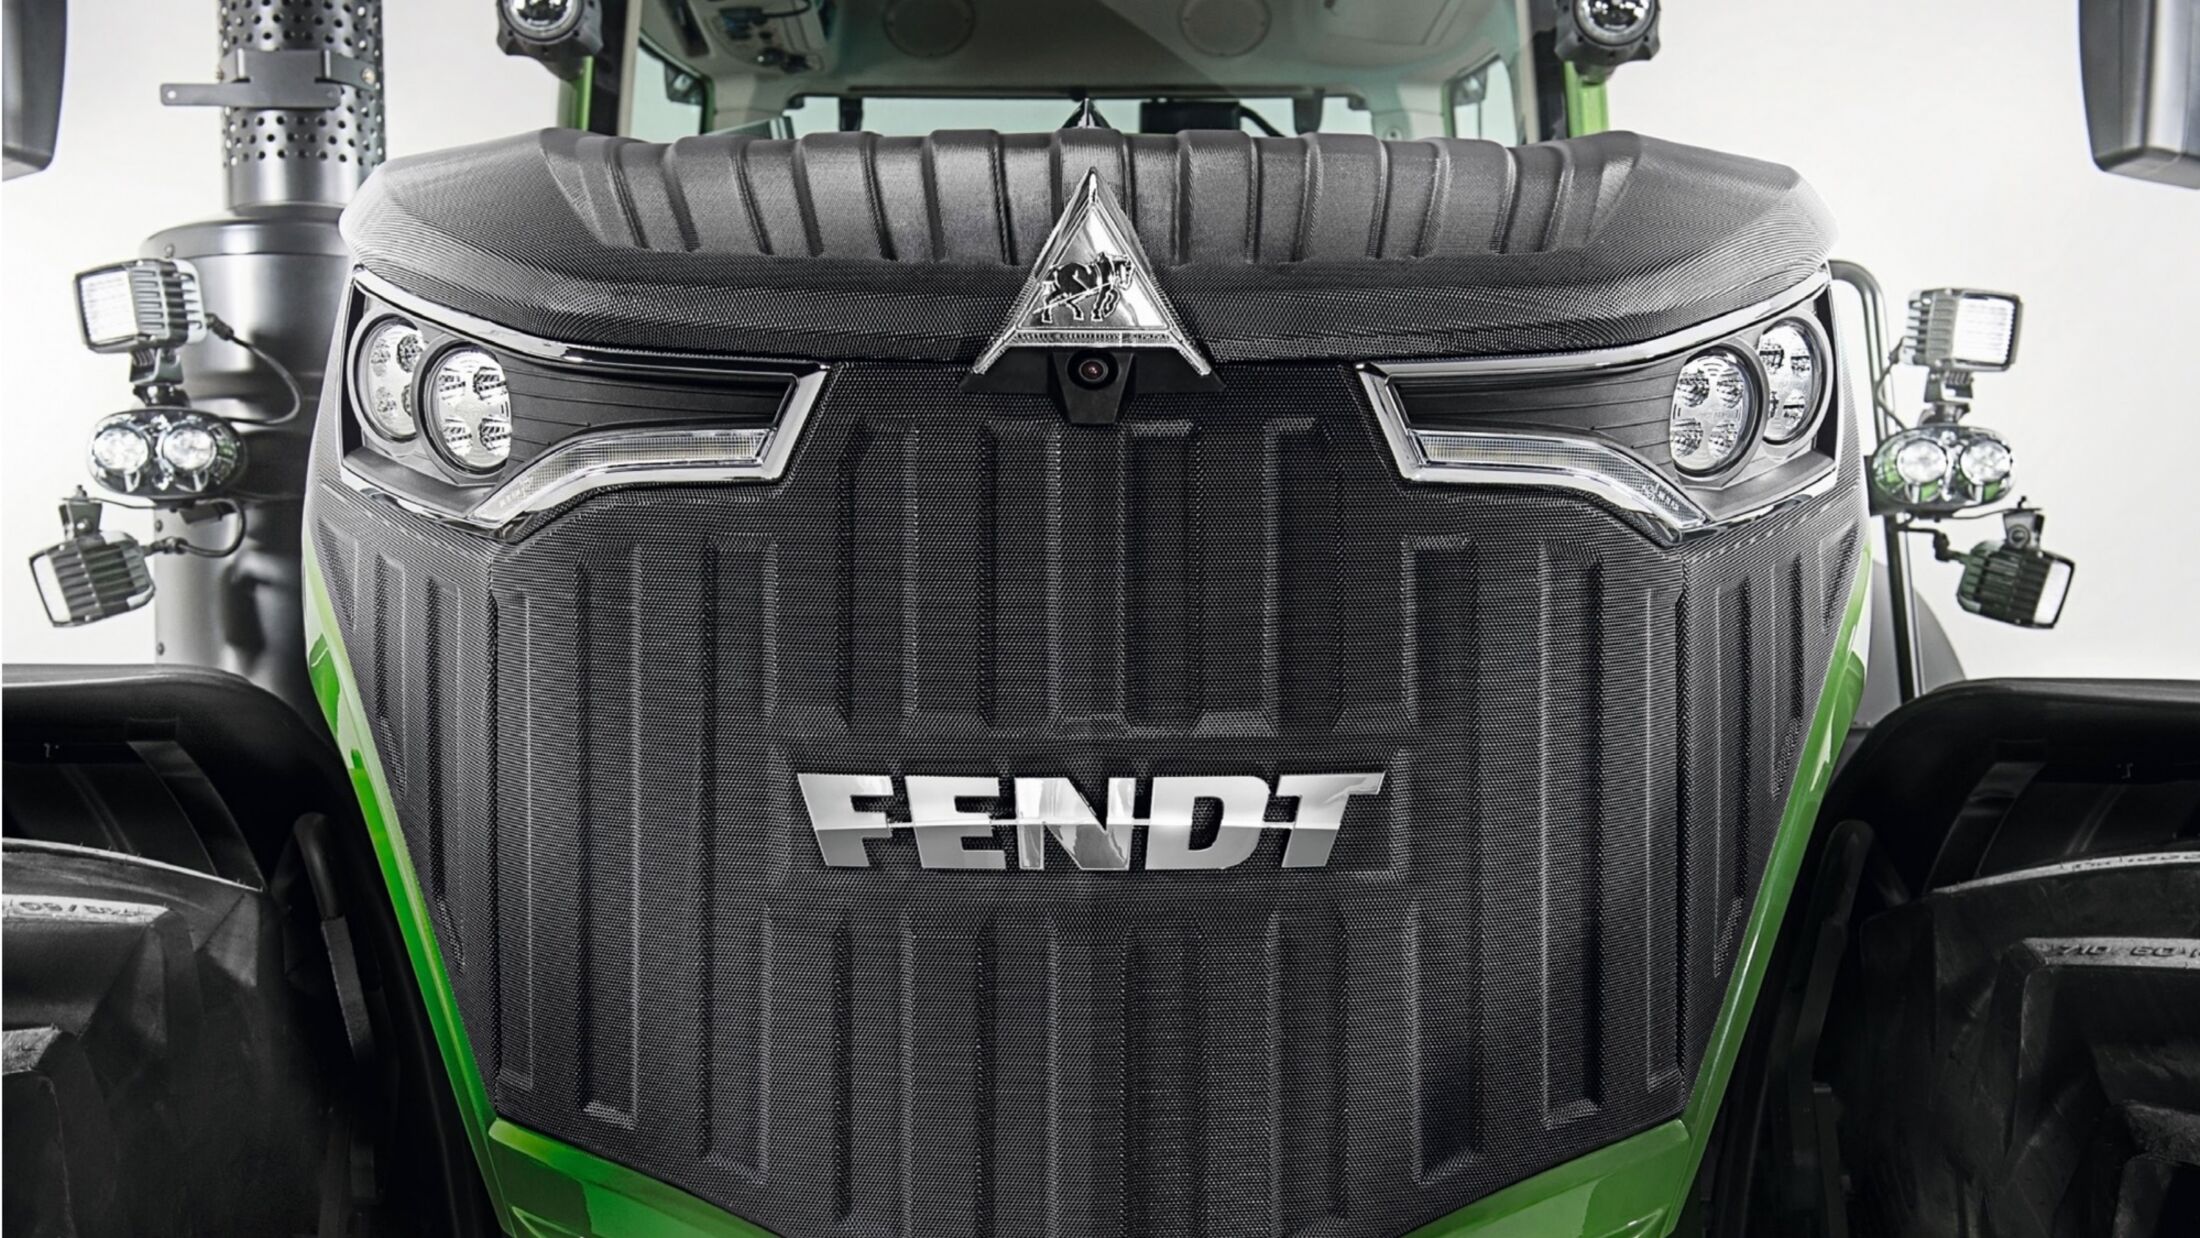 Fendt zeigt komplett neue 600er Traktor-Baureihe